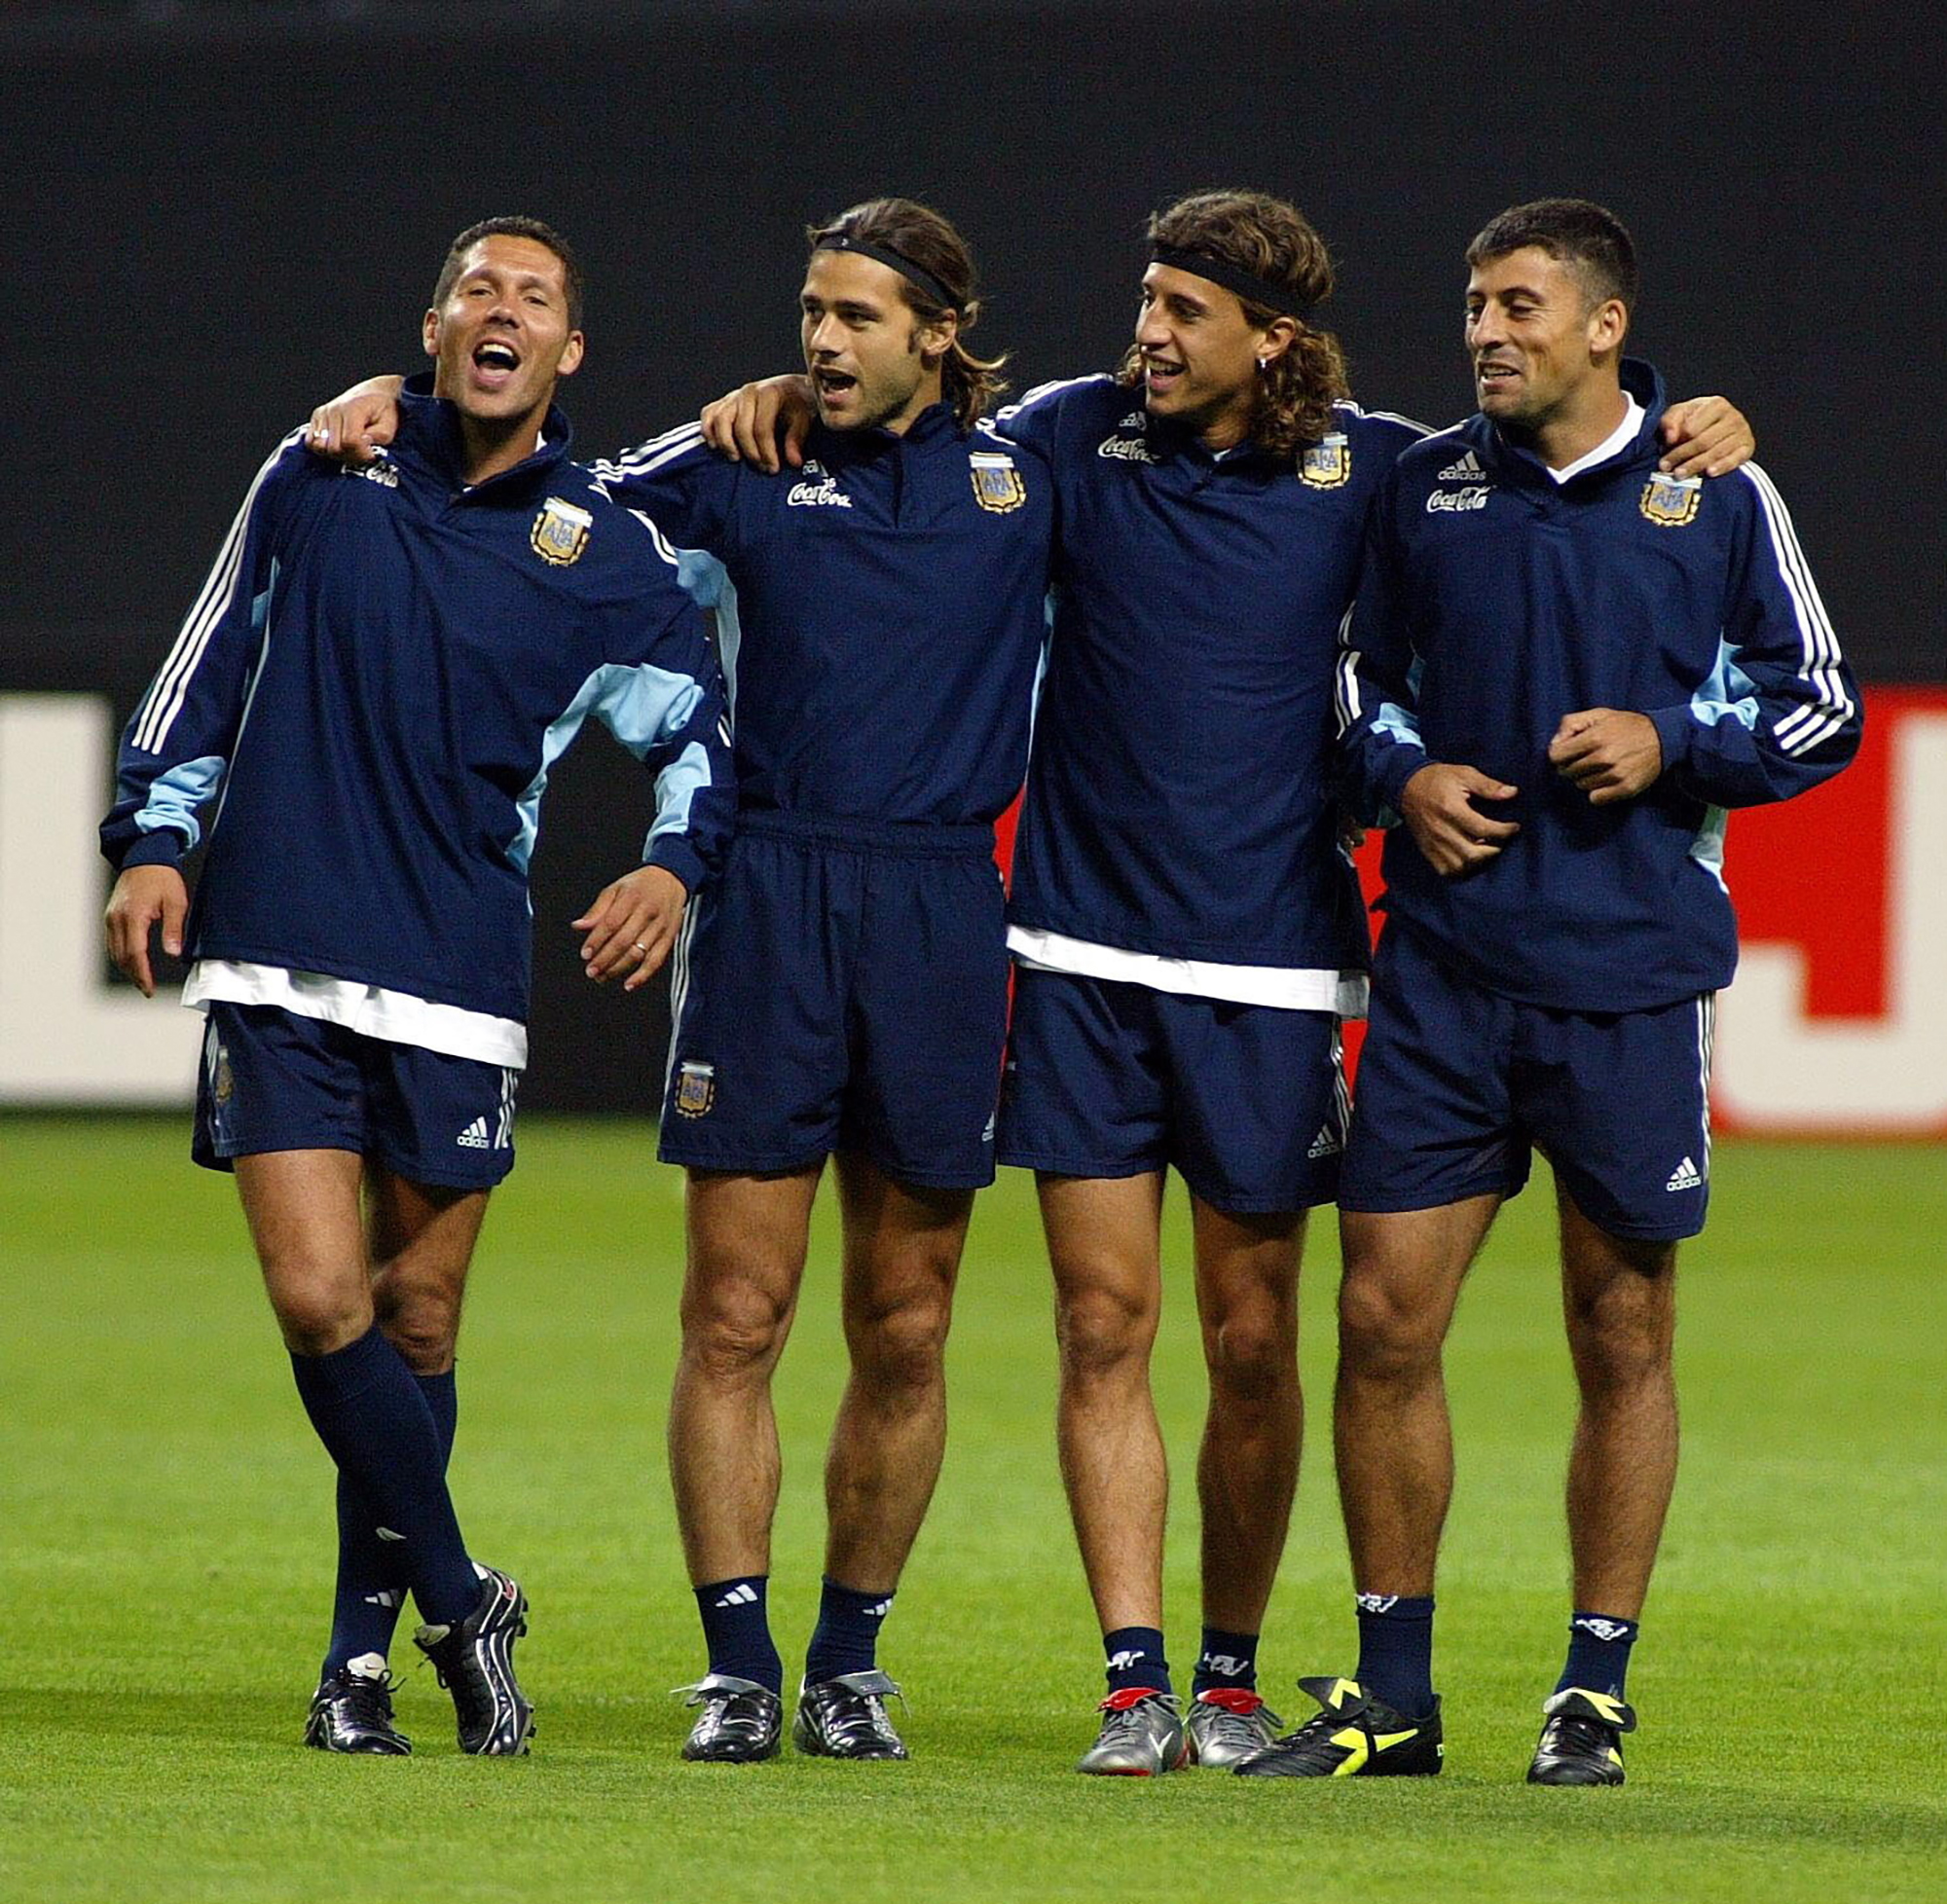 Argentinien wie singt und lacht: Eines der seltenen Bilder, auf denen man Walter Samuel (ganz rechts) schmunzeln sieht, wie hier während der WM 2002 in Japan.